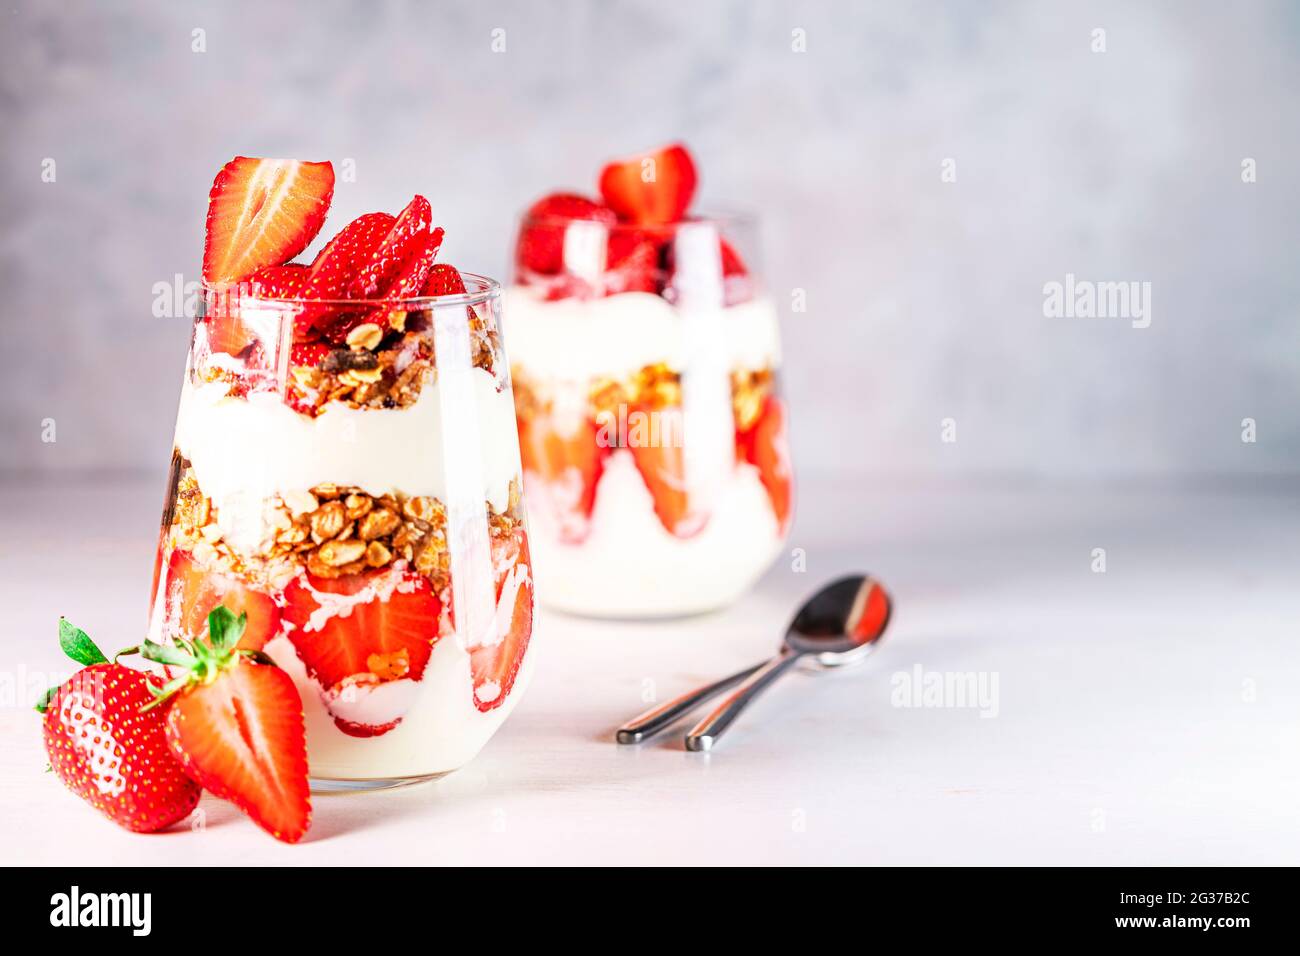 Petit déjeuner sain composé de parfaits aux fraises, de yaourts et de muesli frais en verres. Banque D'Images